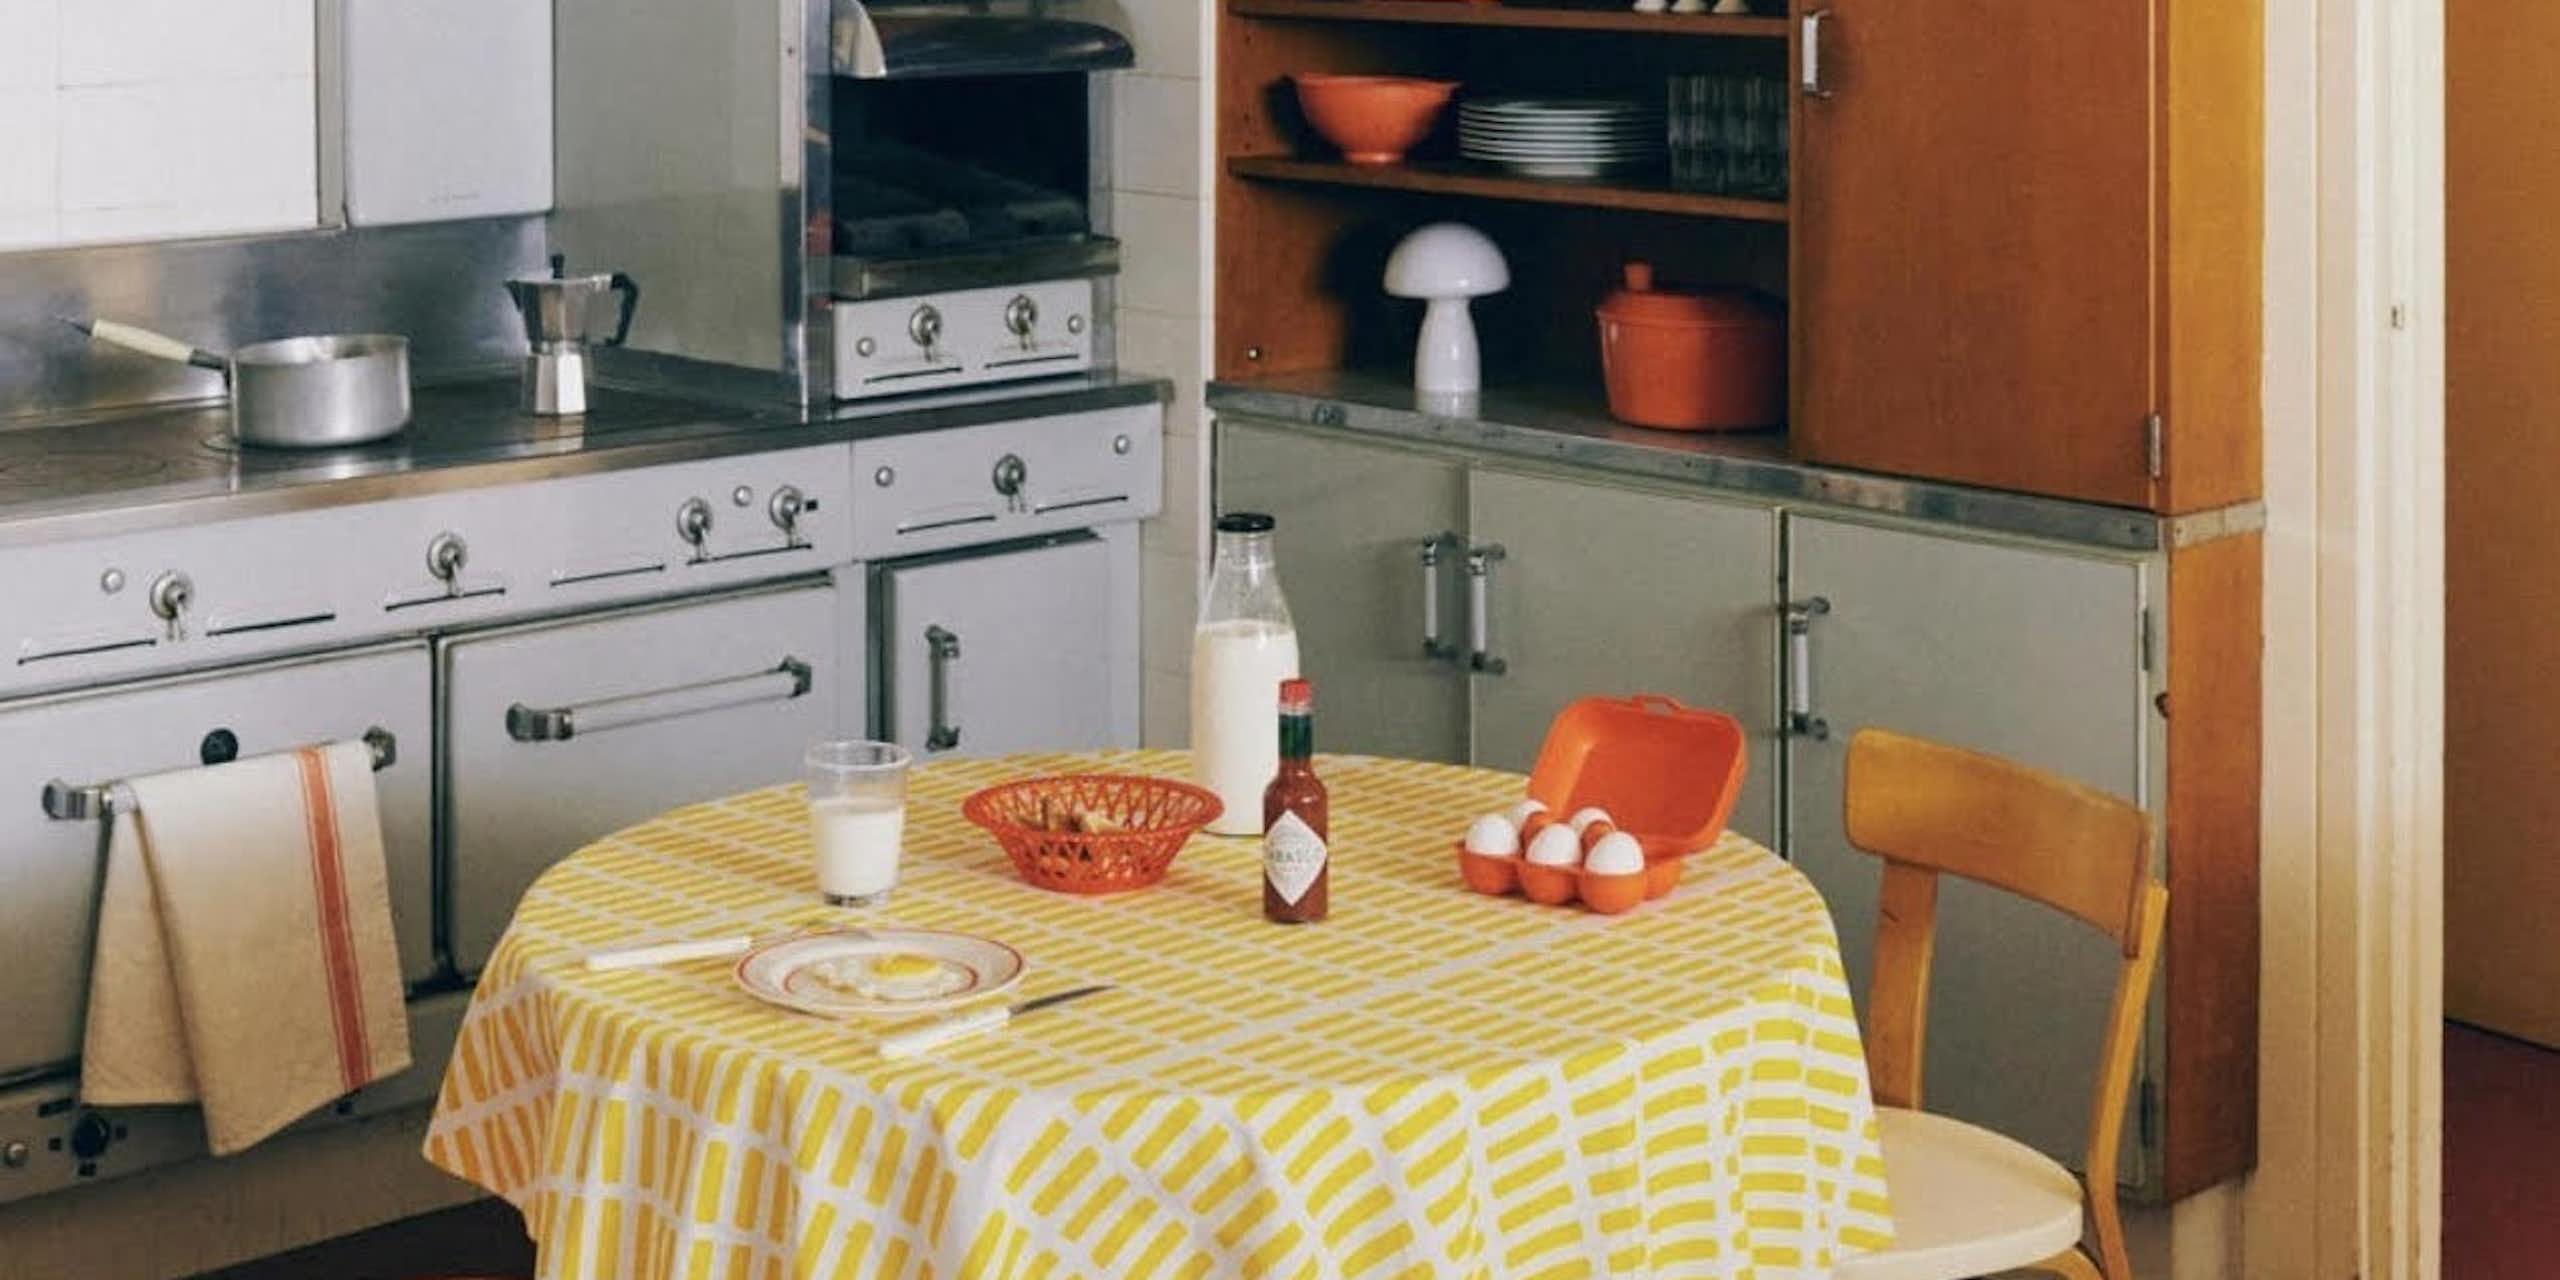 la reconstitution d'une cuisine des années 60 sur le compte Instagram de Monoprix